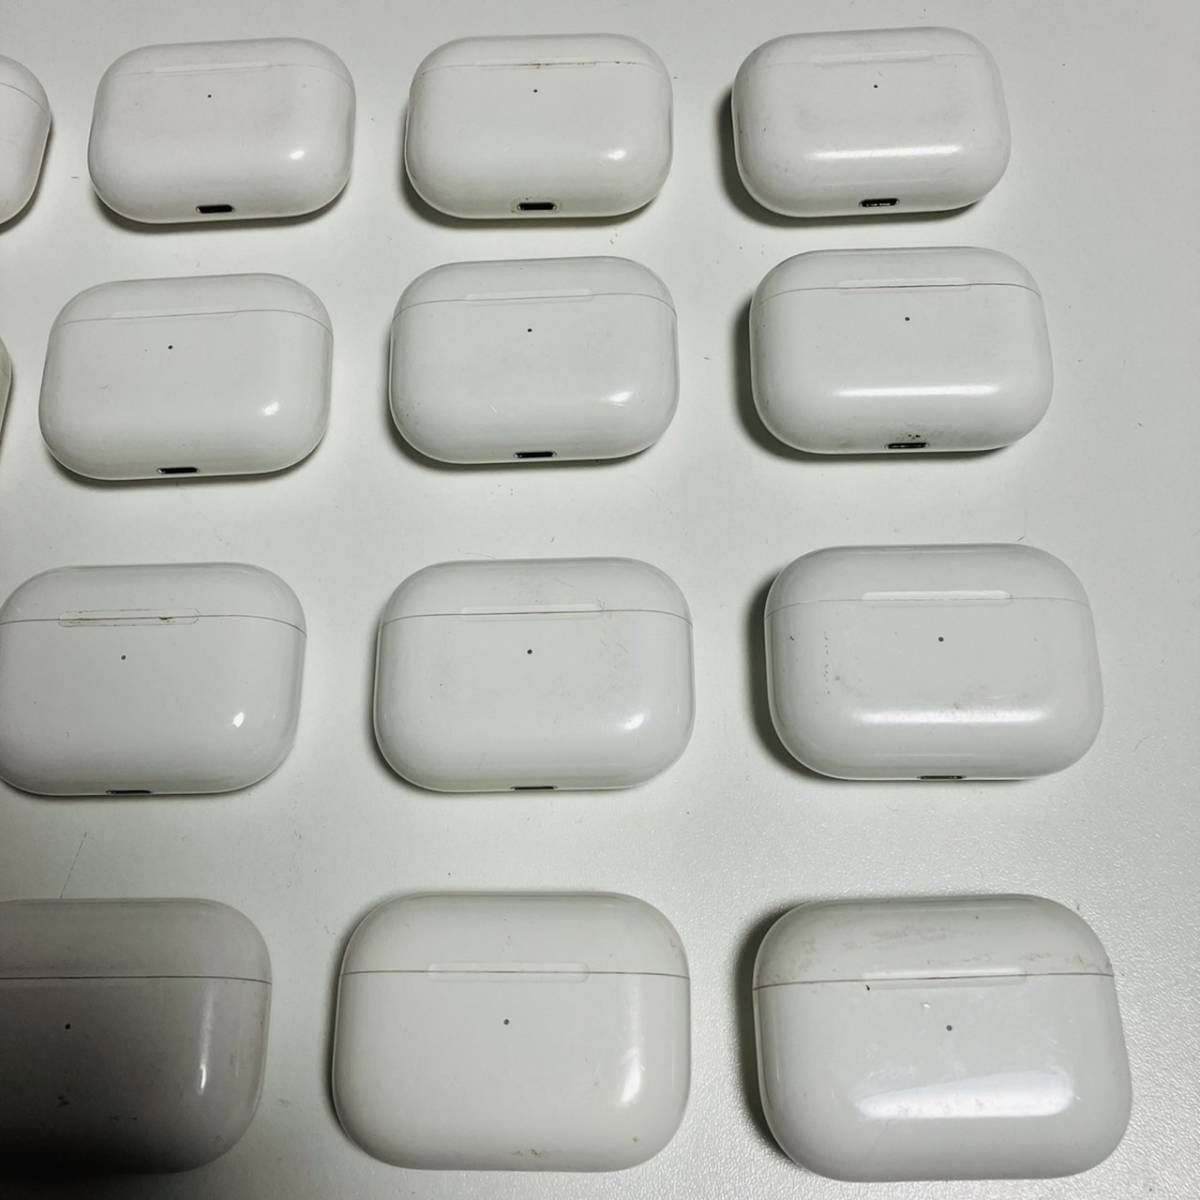 Apple AirPods Pro A2190 アップル エアポッズプロ 充電ケースのみ まとめて 20個セット イヤホンケース 管理20-3 